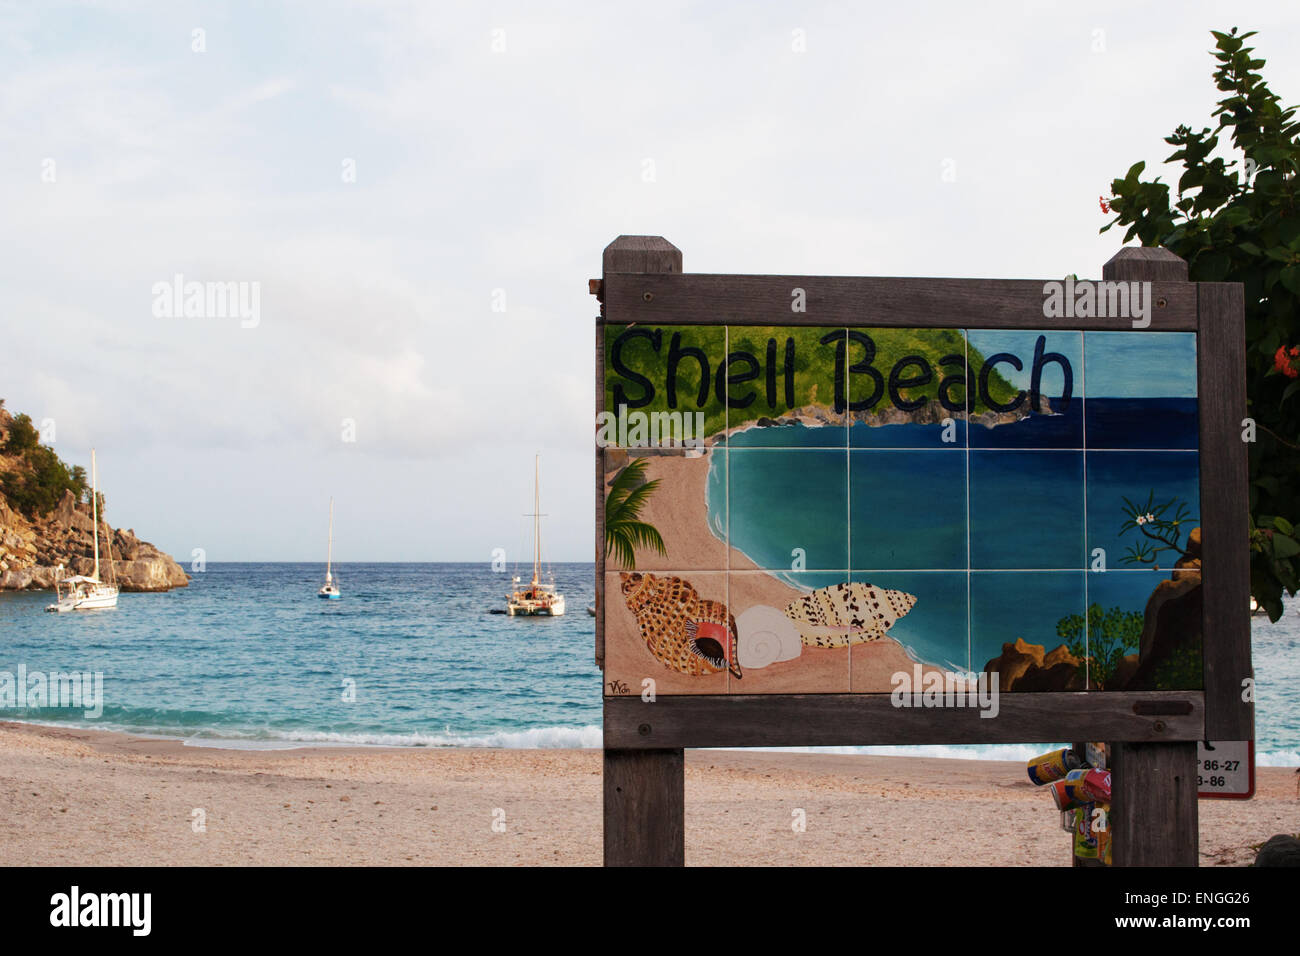 Gustavia, St Barth, St Barths, Saint Barthélemy, French West Indies, Antilles françaises : la mer des Caraïbes et le panneau en bois de la plage de Shell Beach Banque D'Images